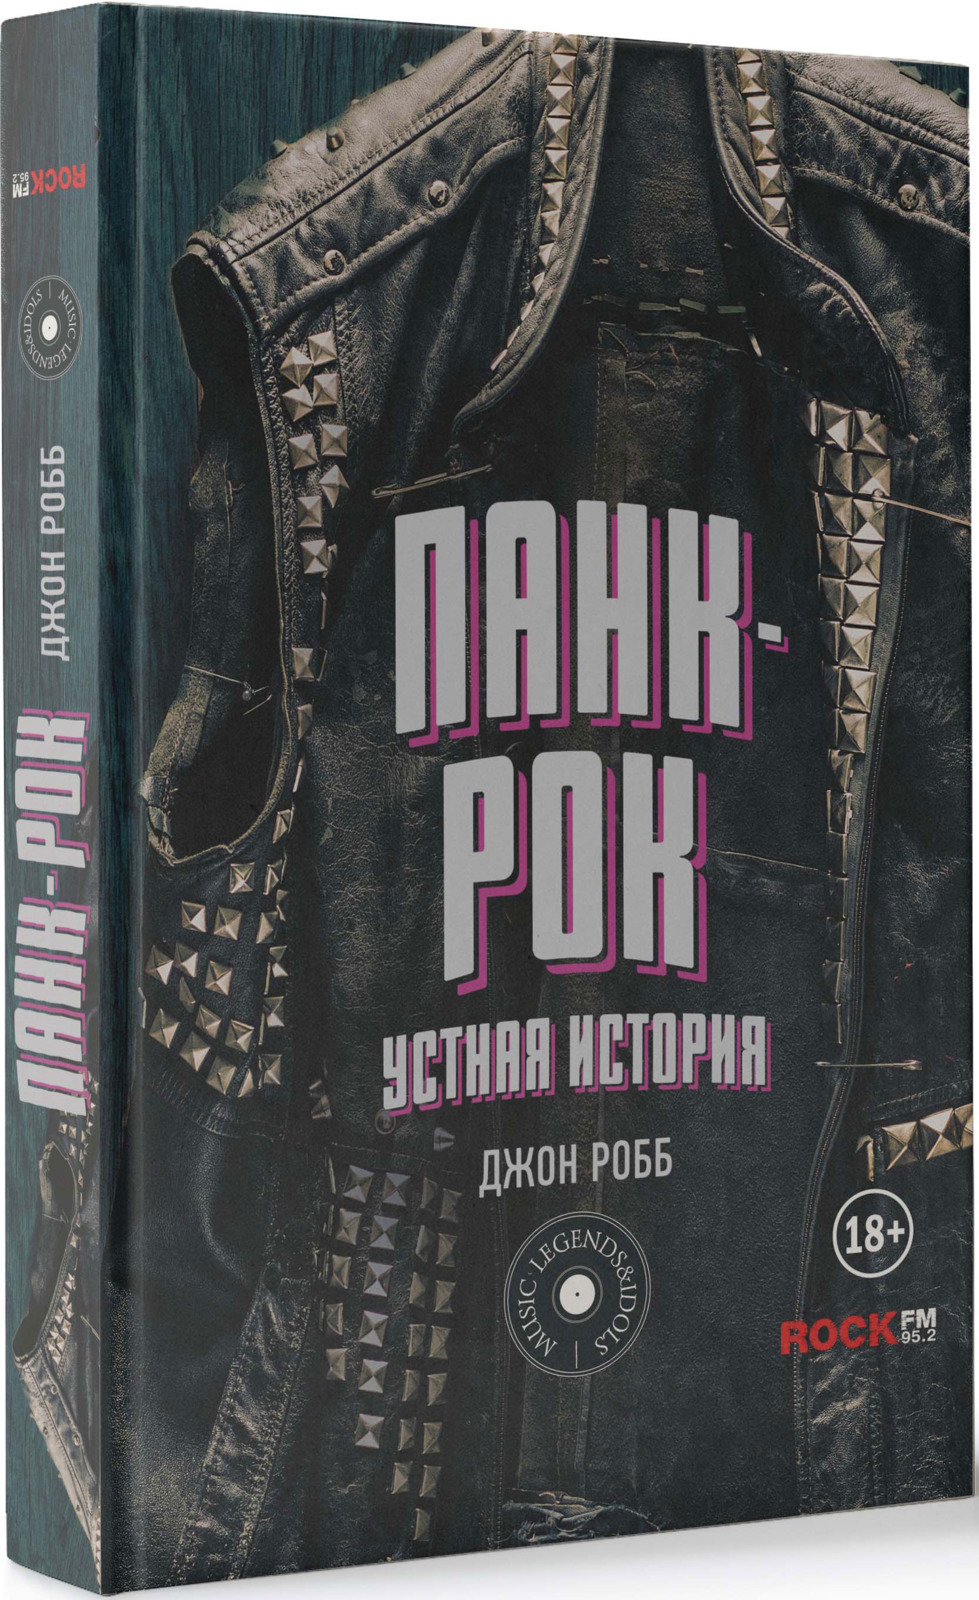 Робб Джон Панк-Рок. Устная история